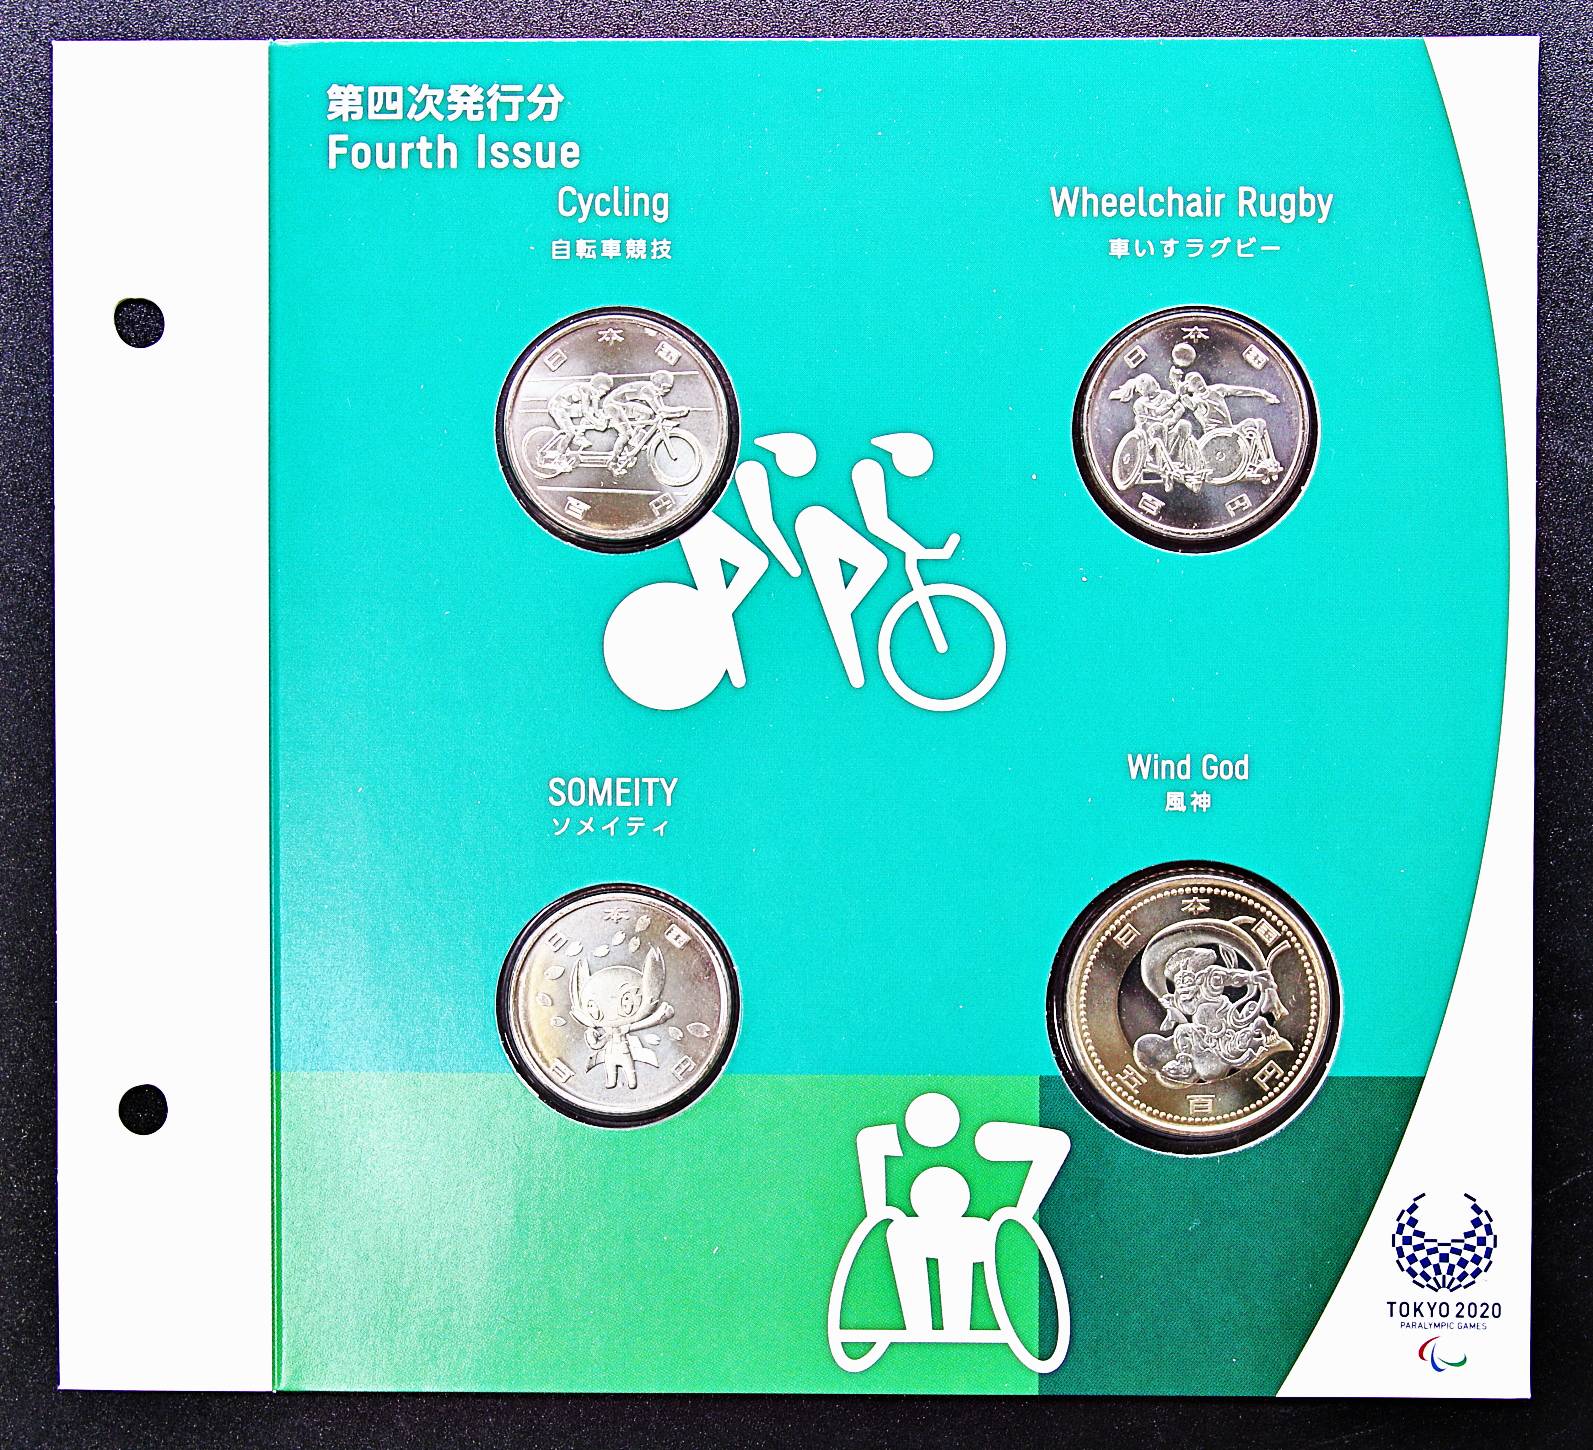 東京2020パラリンピック競技大会記念 500円バイカラー・クラッド貨幣 